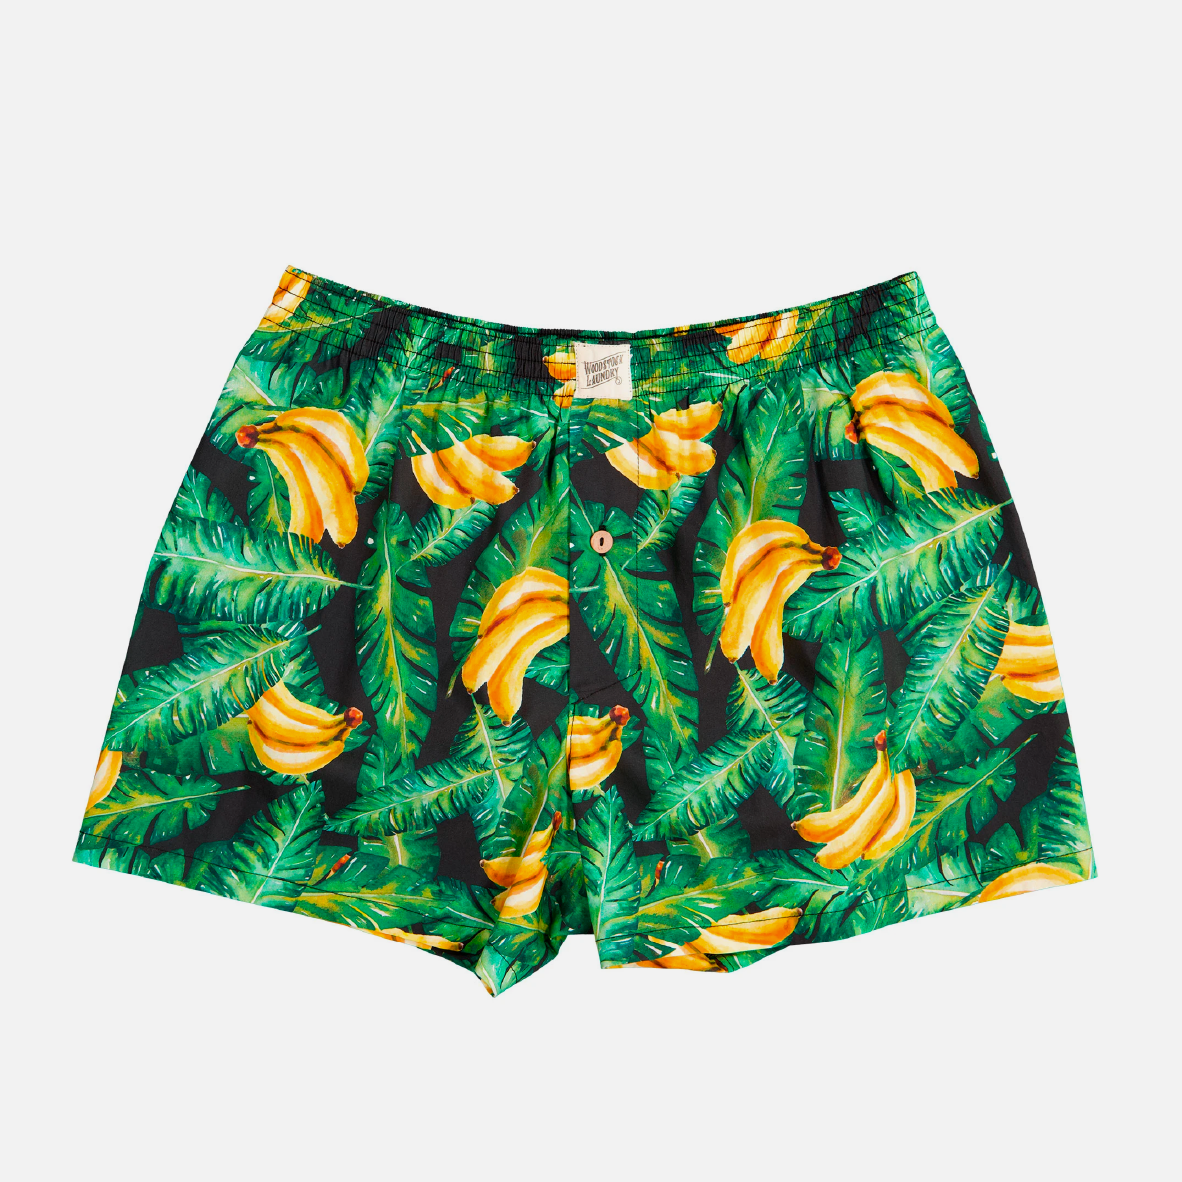 Mens Boxer Shorts - Banana Leaves